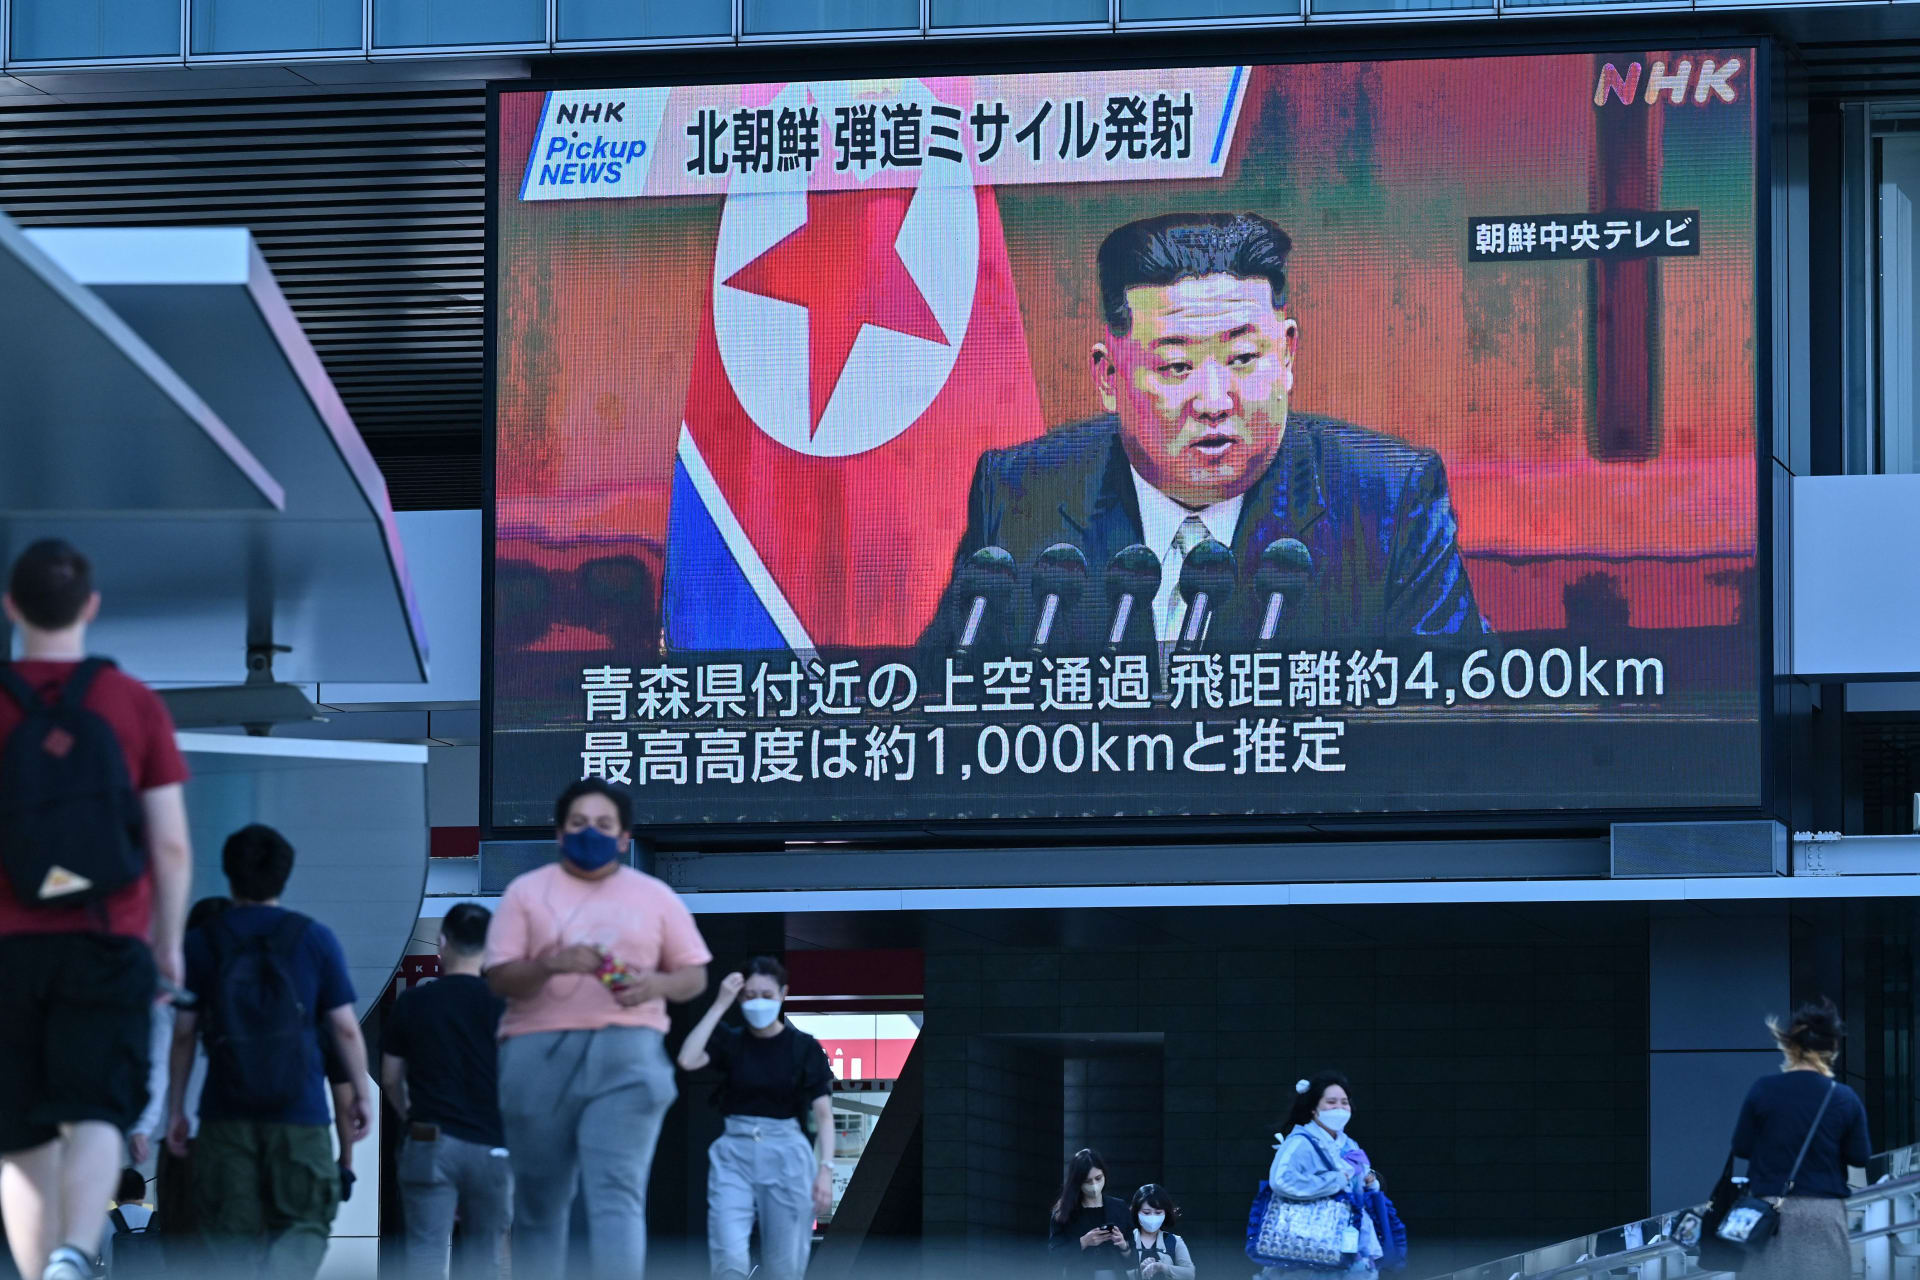 كوريا الشمالية تعدل الدستور لـ"تعزيز القوة النووية".. وكيم جونغ أون: حدث تاريخي